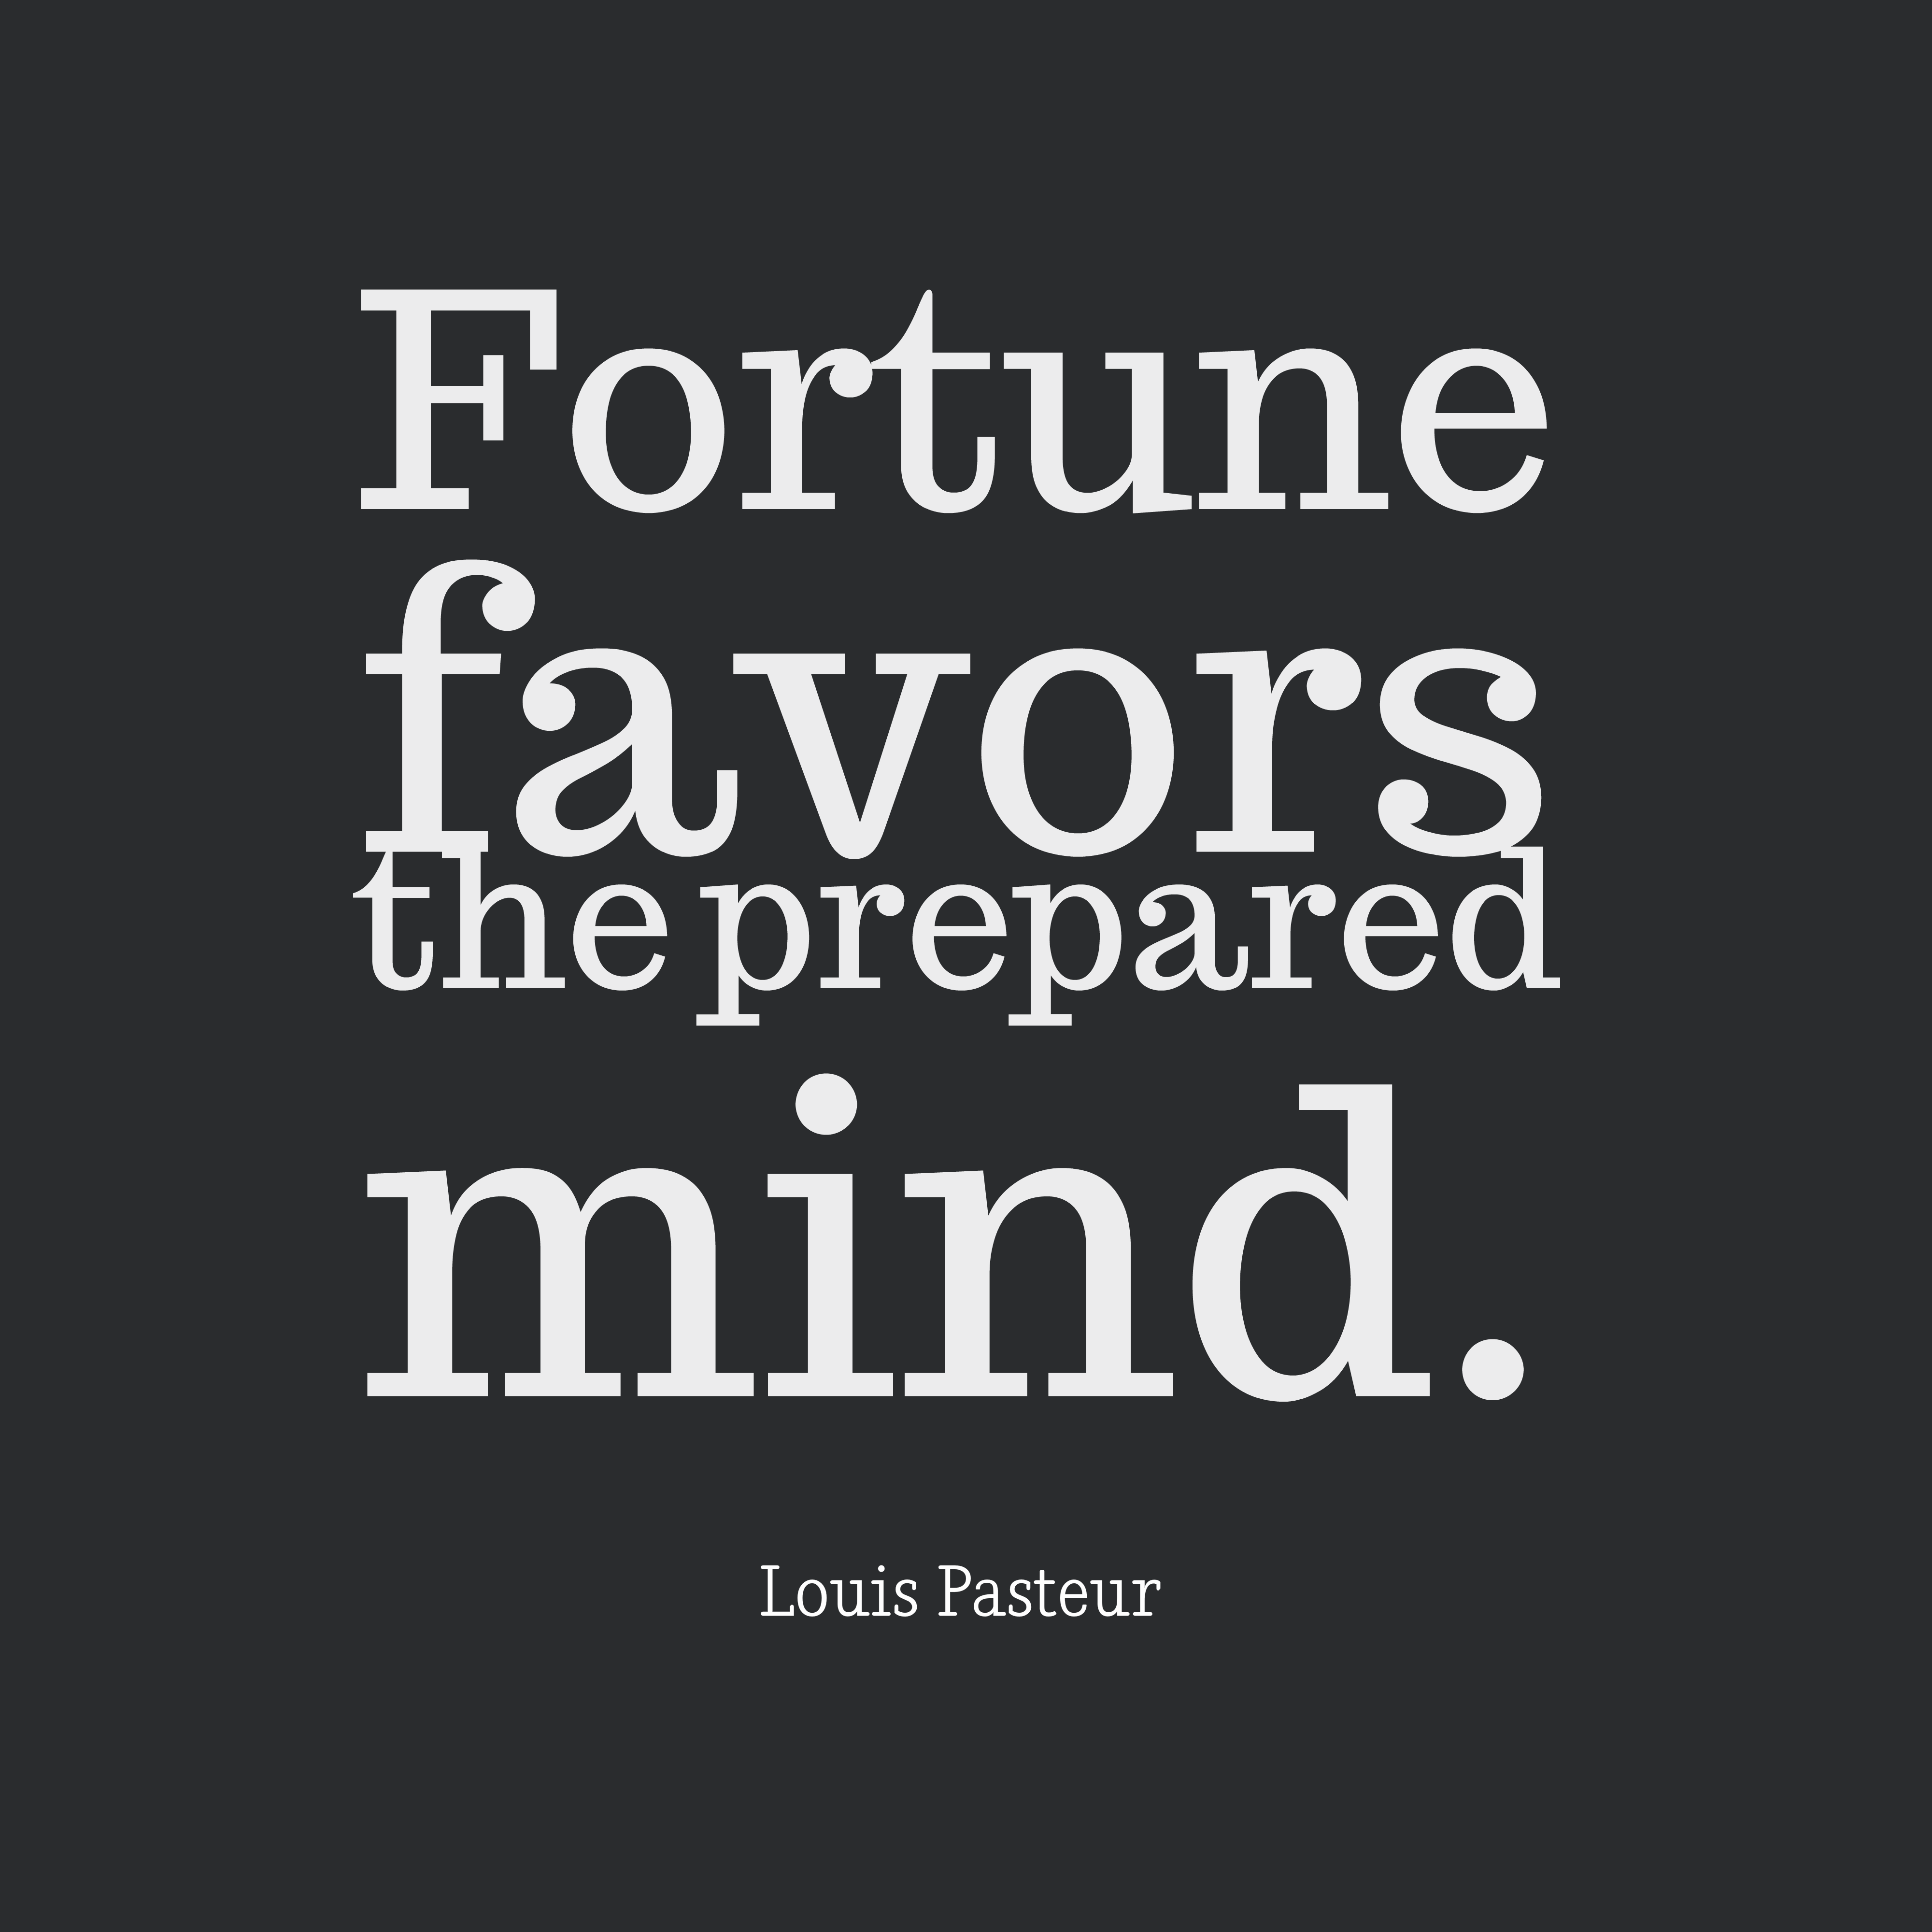 Fortune favors the prepared mind. louis pasteur